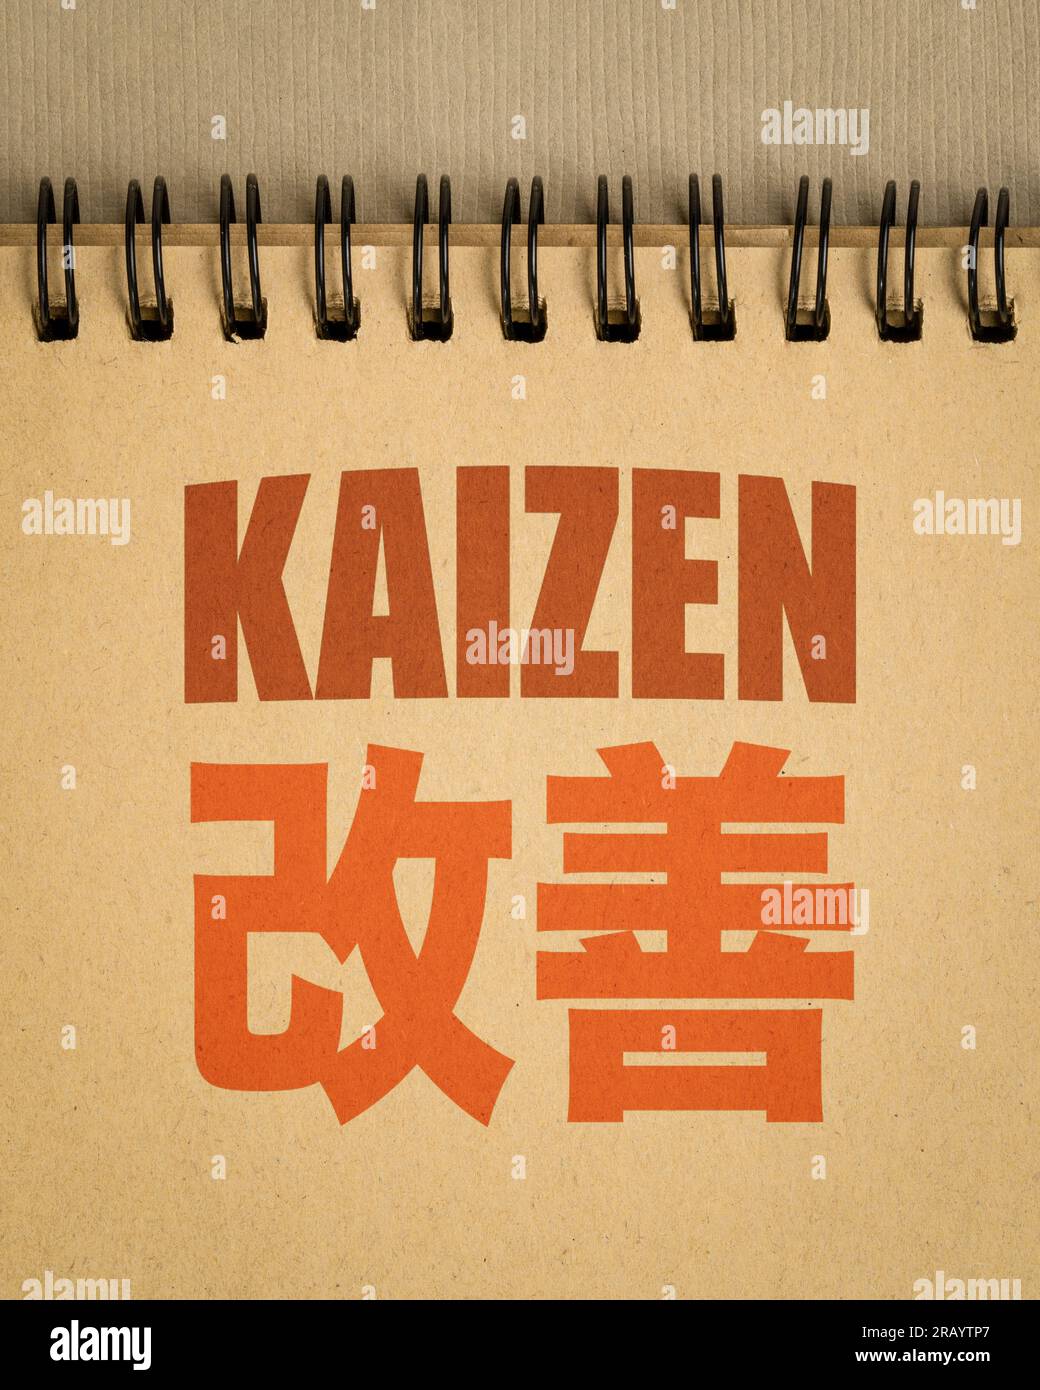 Kaizen - japanisches Konzept der kontinuierlichen Verbesserung - Wortabstract in einem Spiralheft Stockfoto